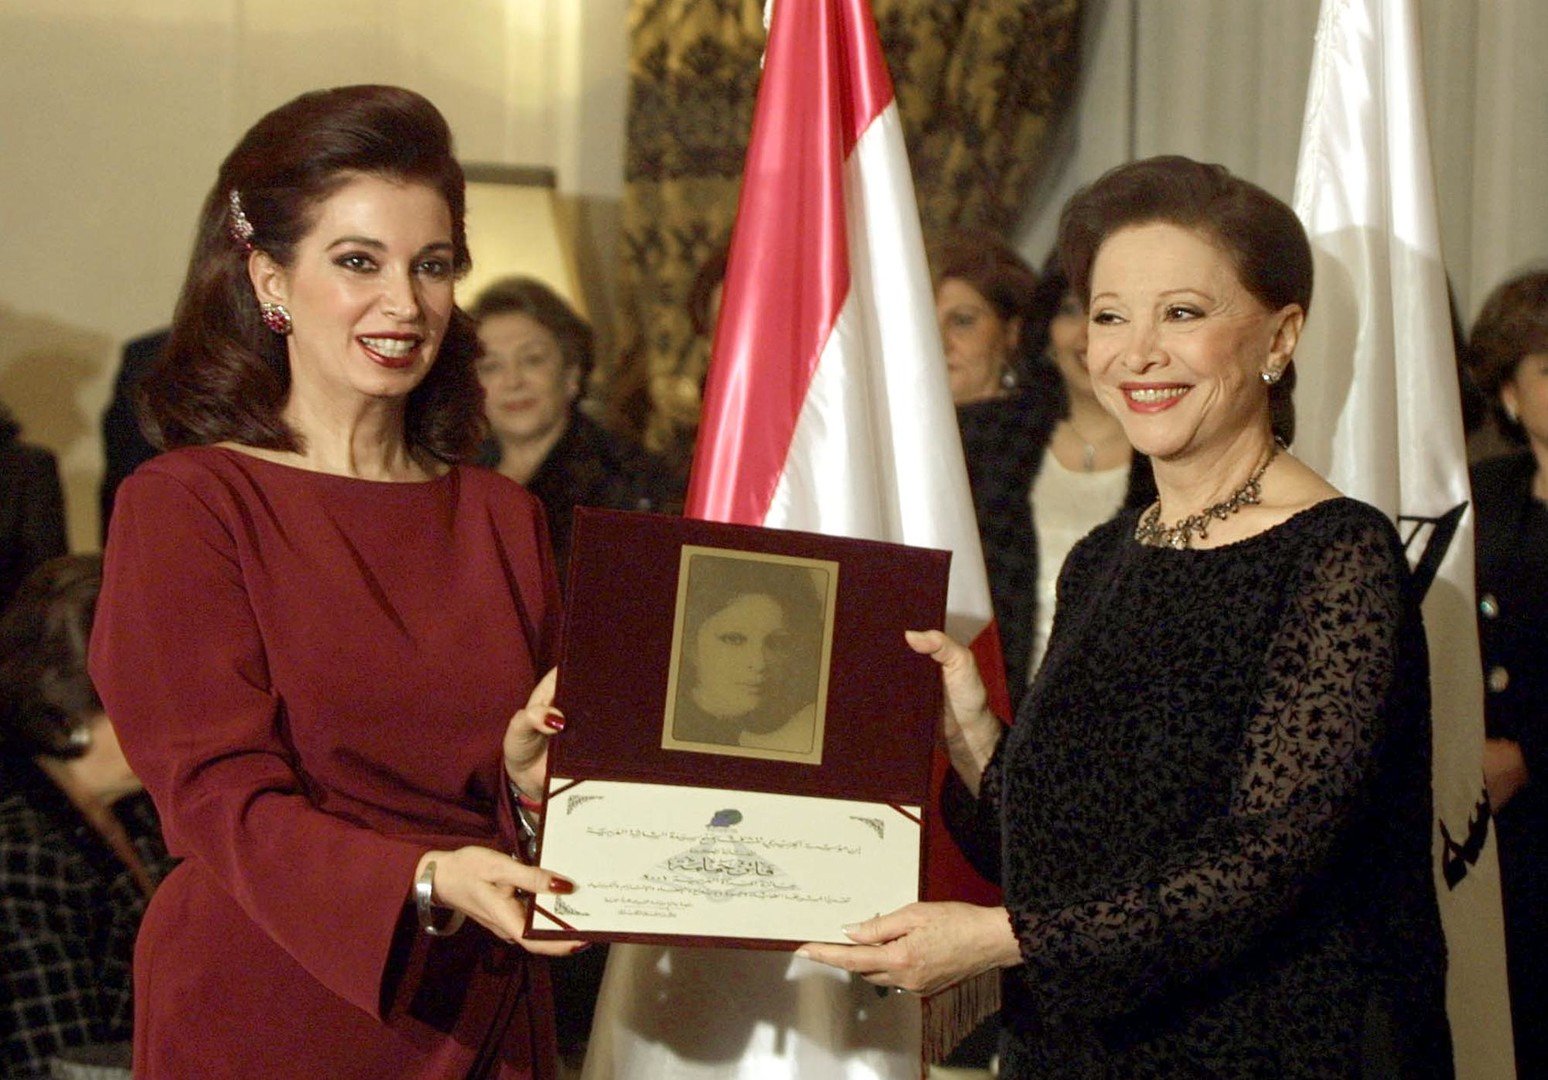  فاتن حمامة تتسلم أول جائزة للمرأة العربية من نازك الحريري في قصر الحريري، بيروت، 30 يناير 2001